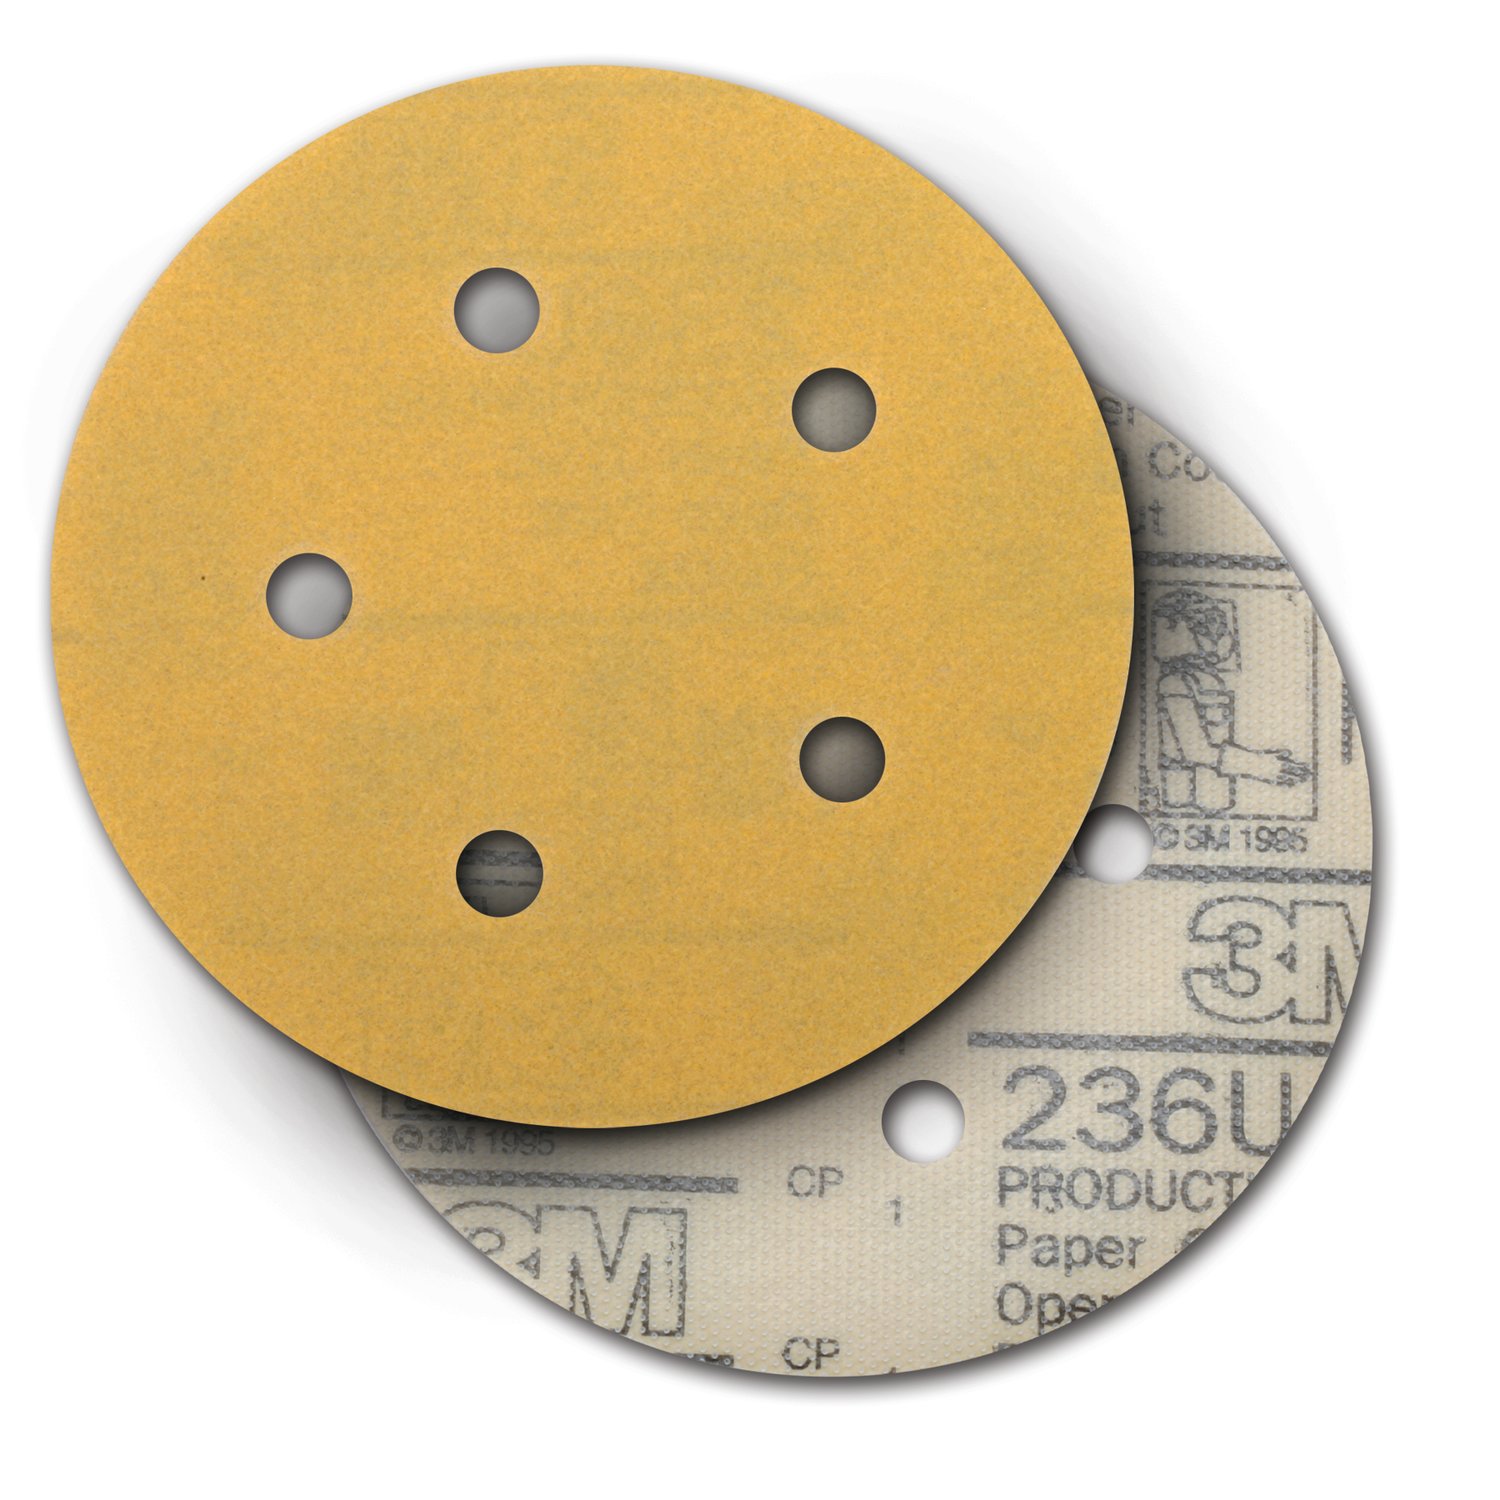 7100221311 - 3M Hookit Paper Disc 236U, P150 C-weight, 5 in x NH, D/F 5HL, Die
500FH, 50/Carton, 250 ea/Case